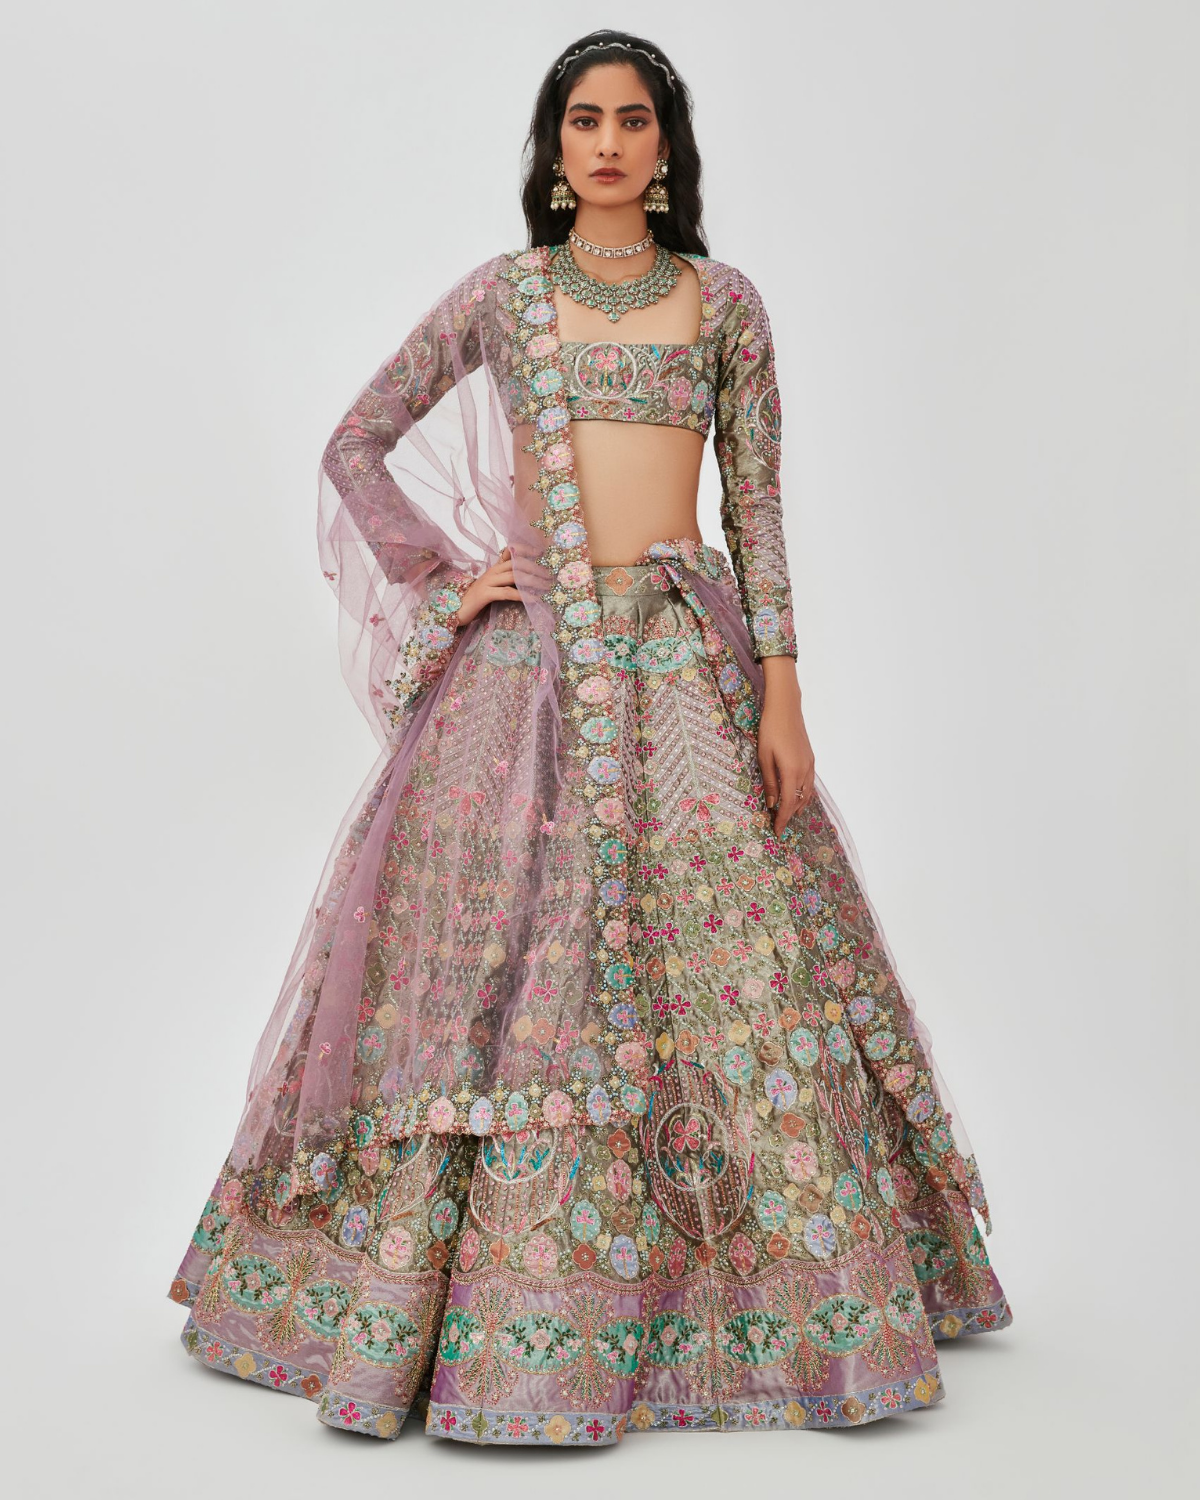 Multi-Colored Tissue Embellished Kalidar Lehenga Set by Aisha Rao